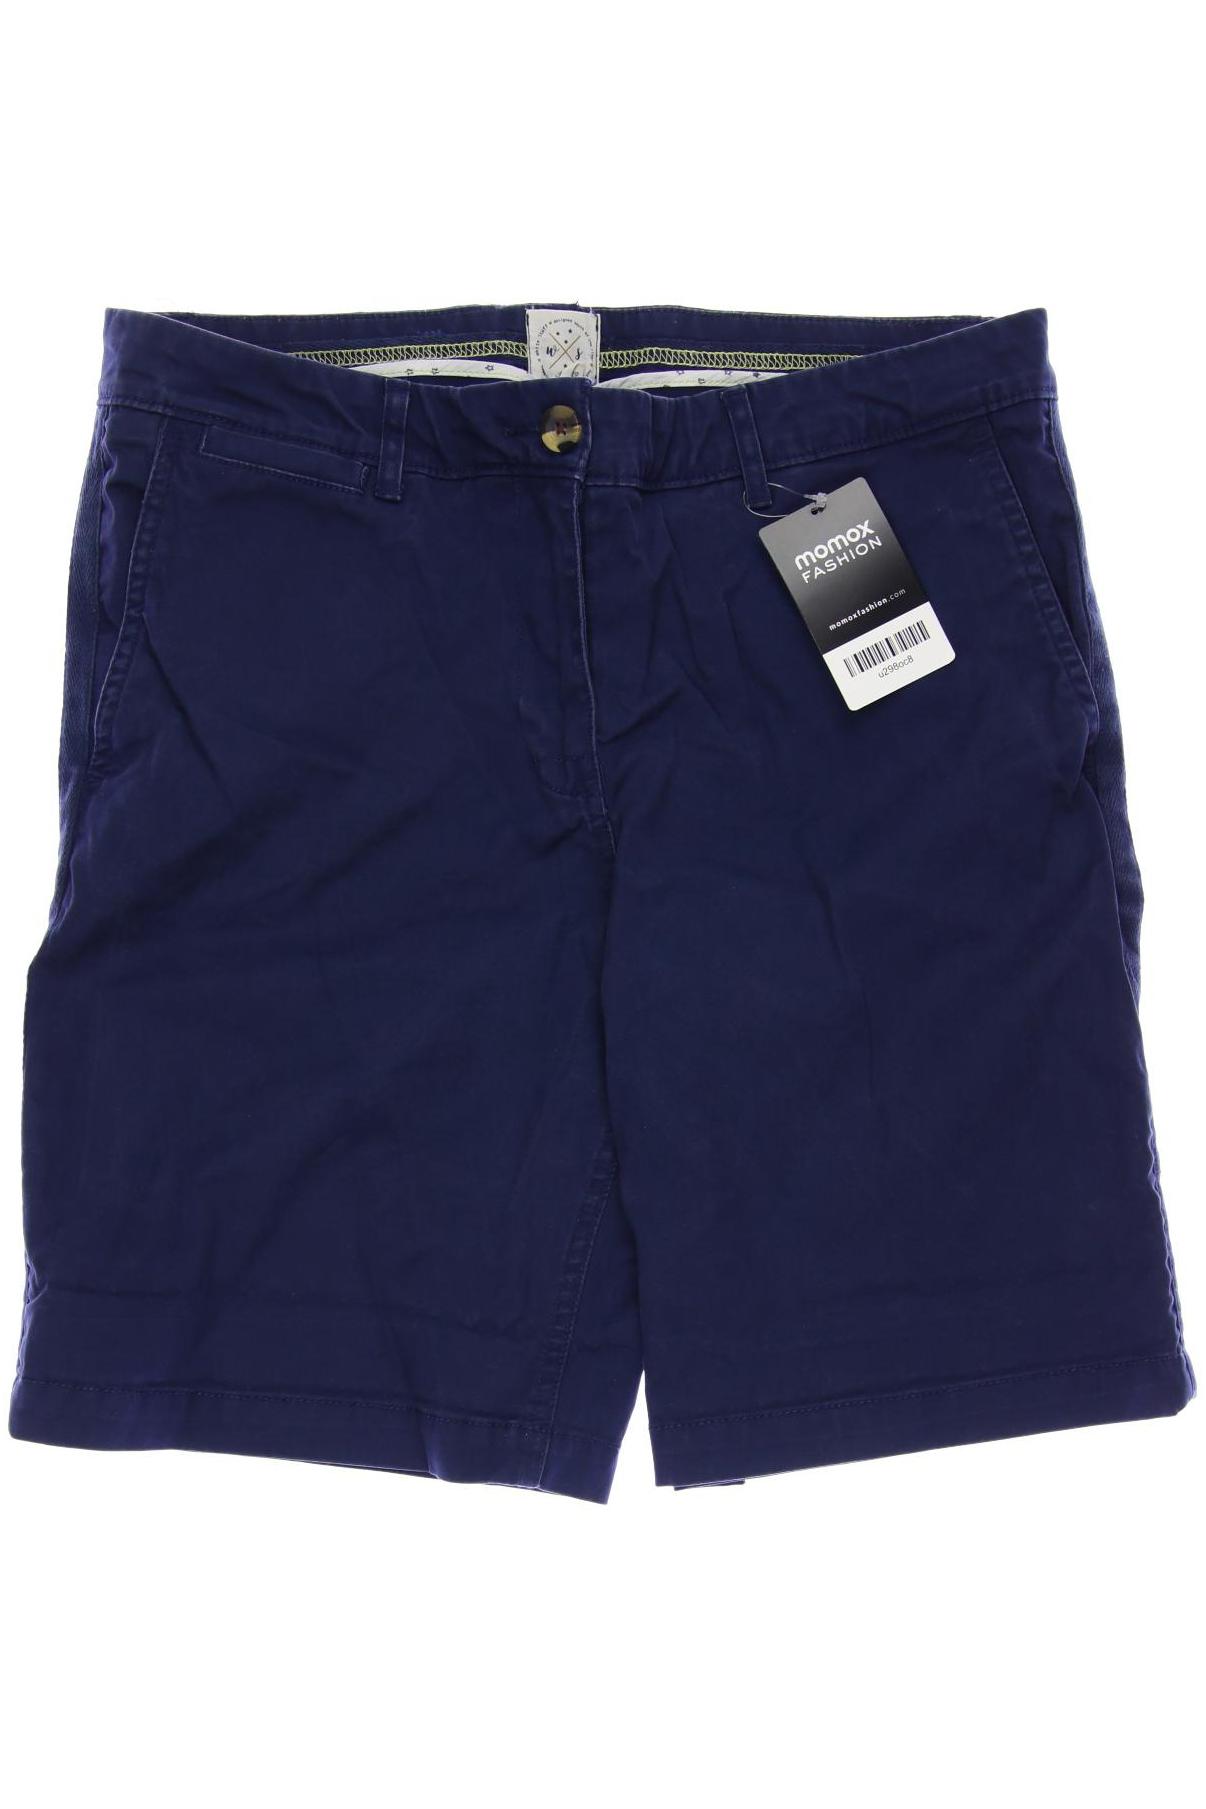 White Stuff Damen Shorts, marineblau von White Stuff